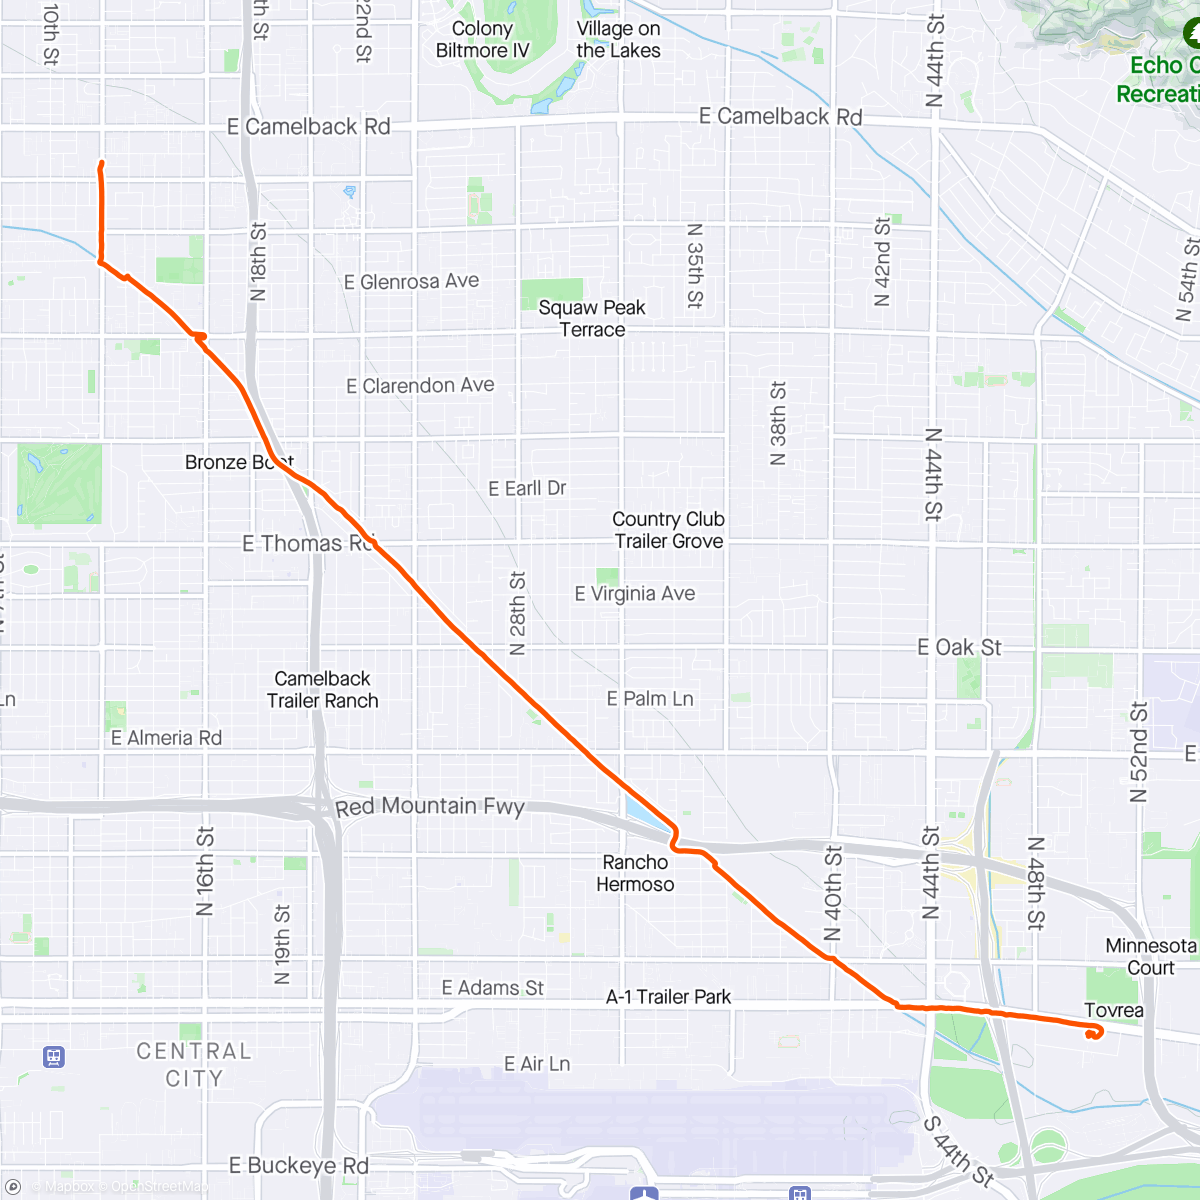 Карта физической активности (Morning Ride)